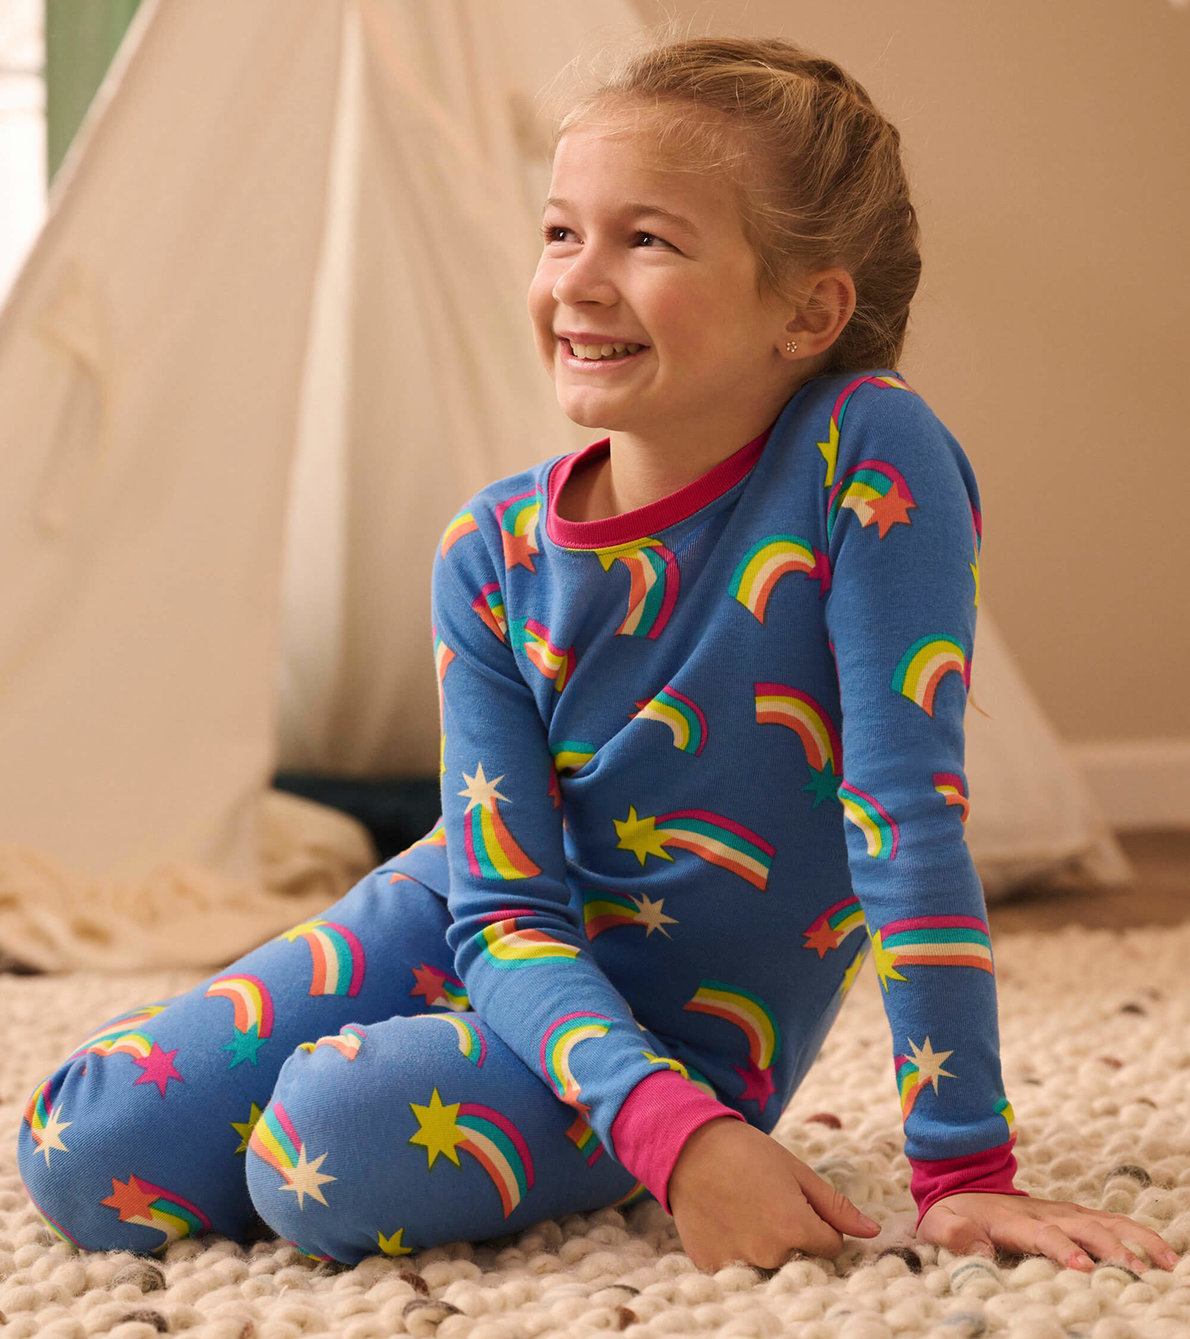 View larger image of Shooting Stars Kids Organic Cotton Pajama Set